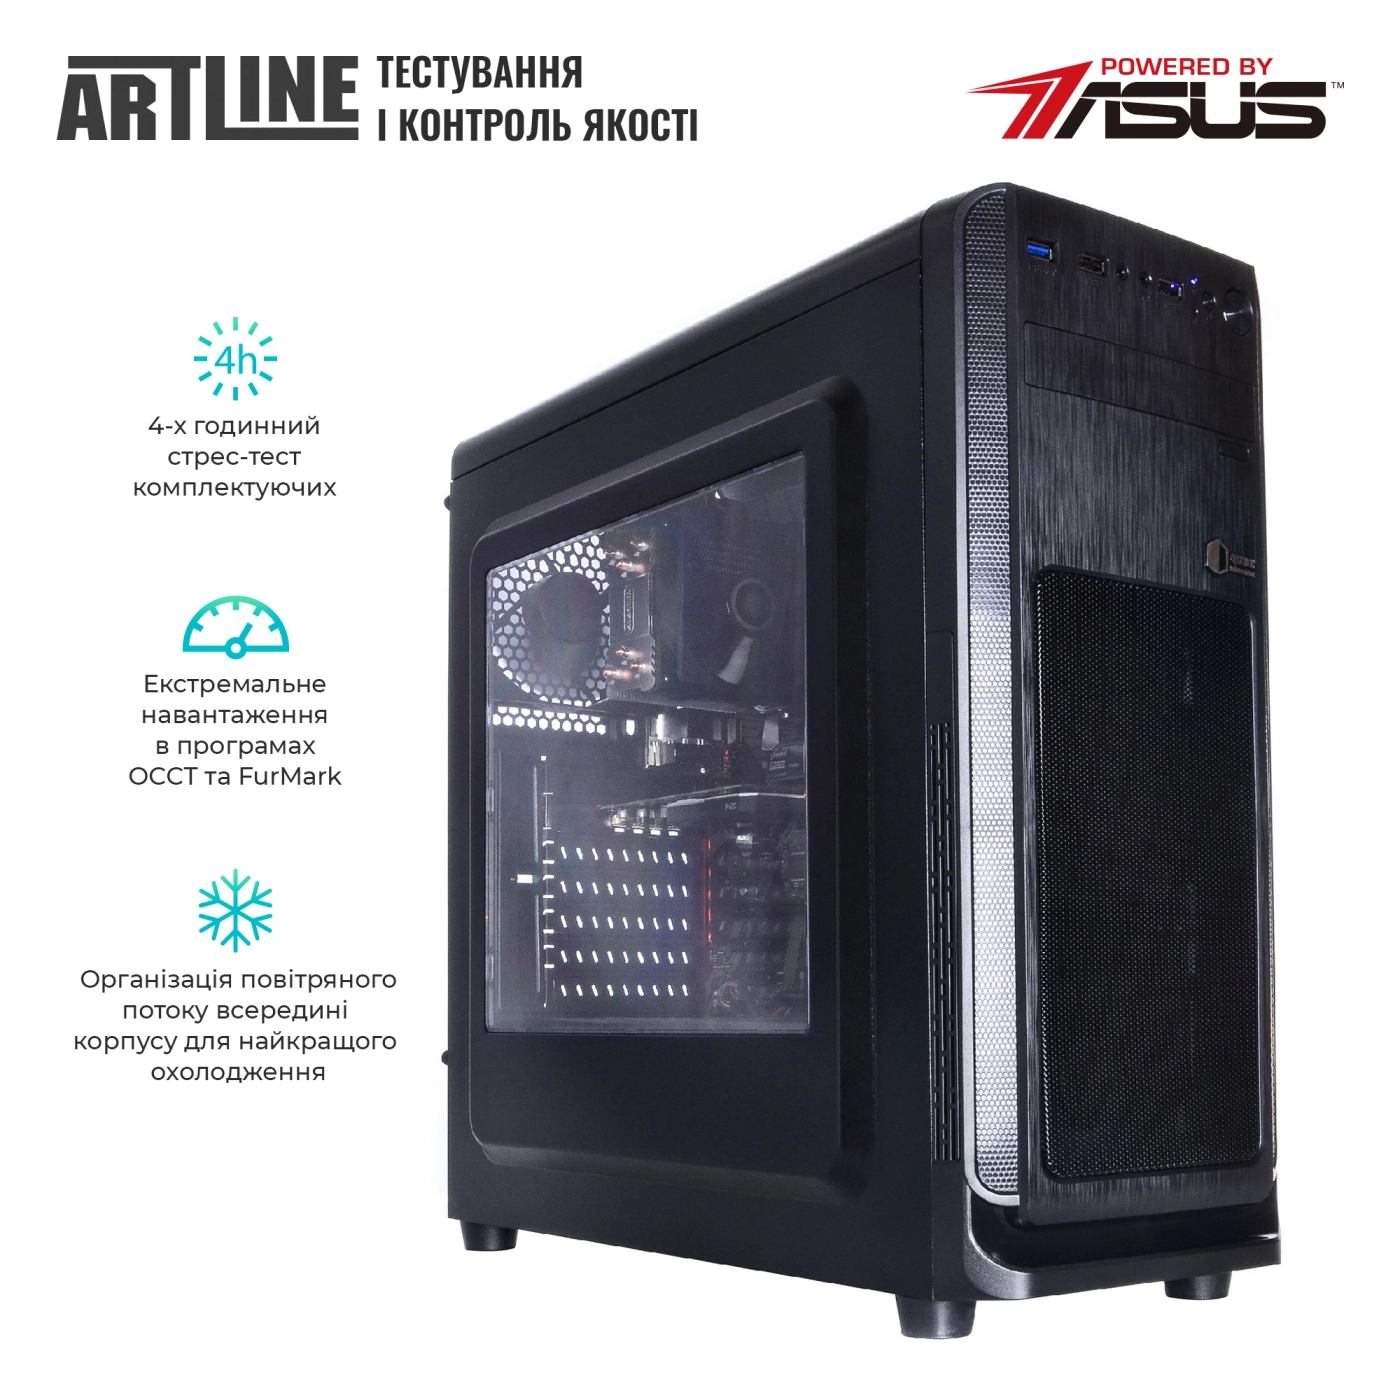 Купить Сервер ARTLINE Business T25v25 - фото 6